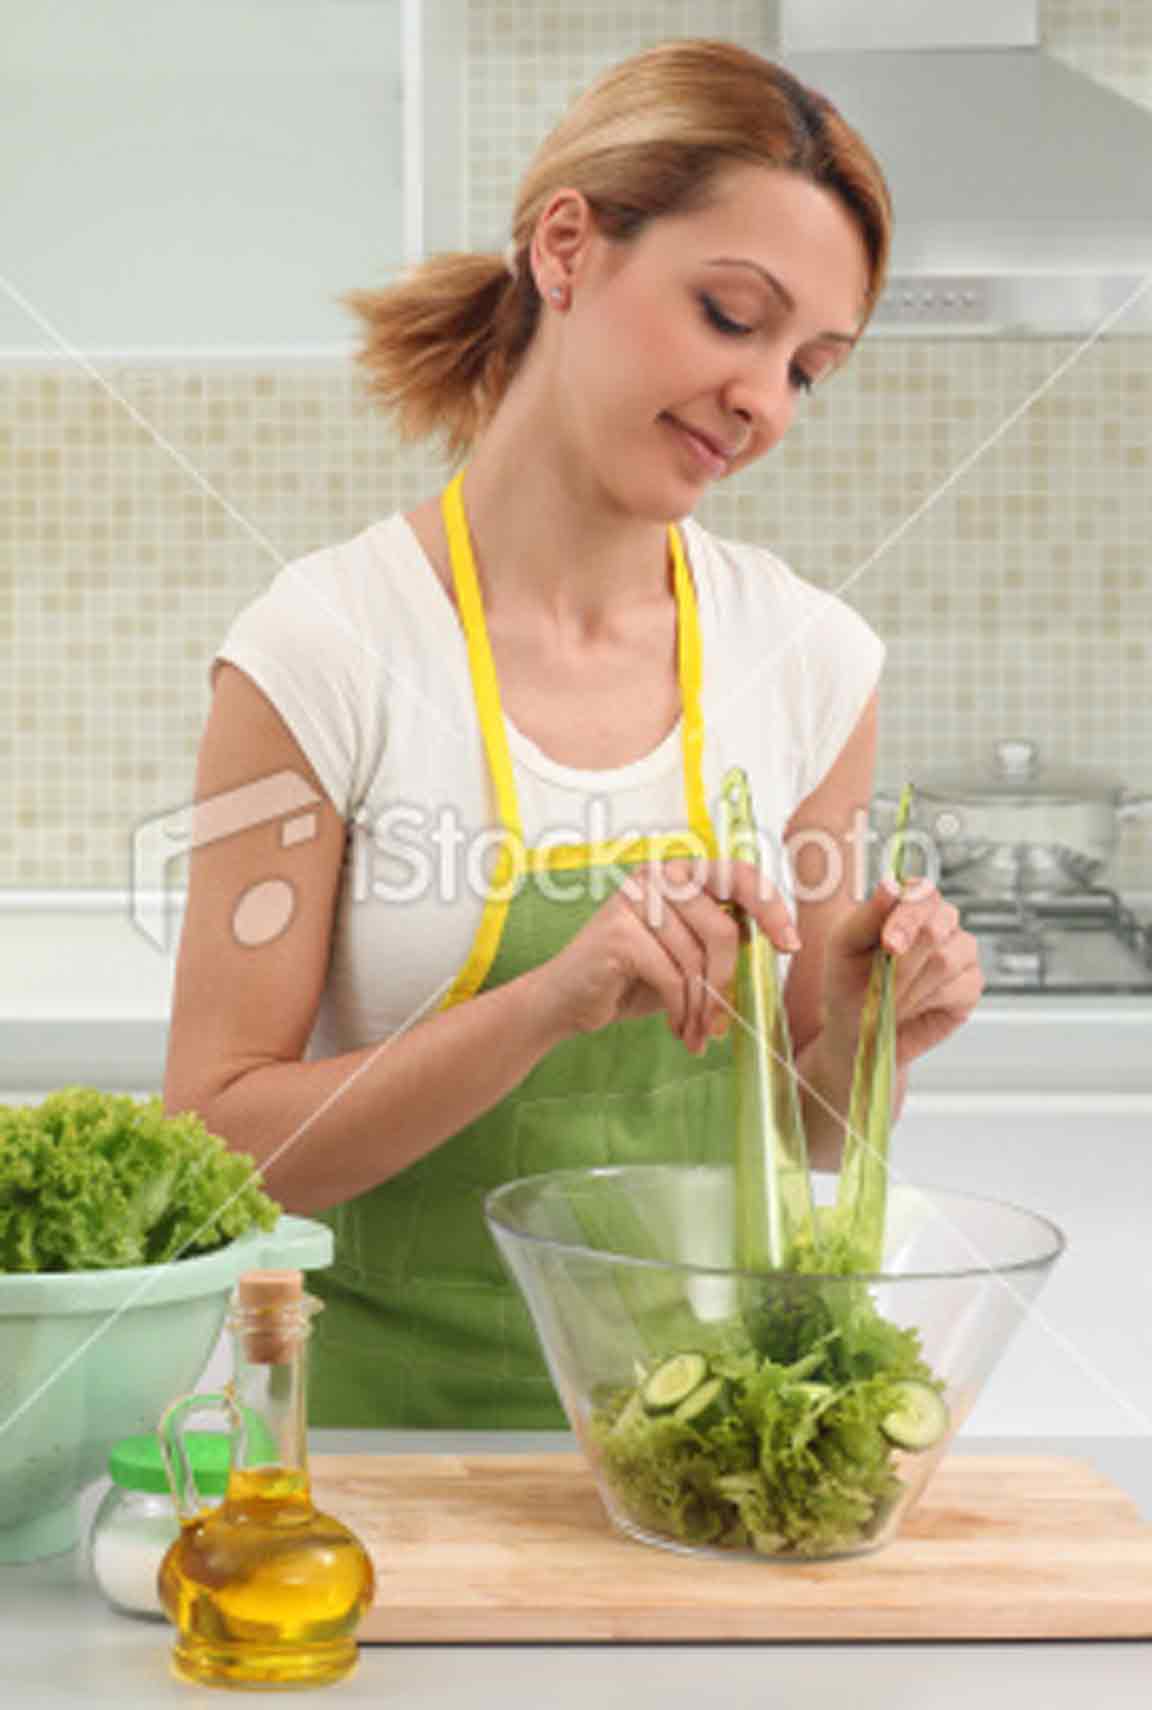 Women Making Food